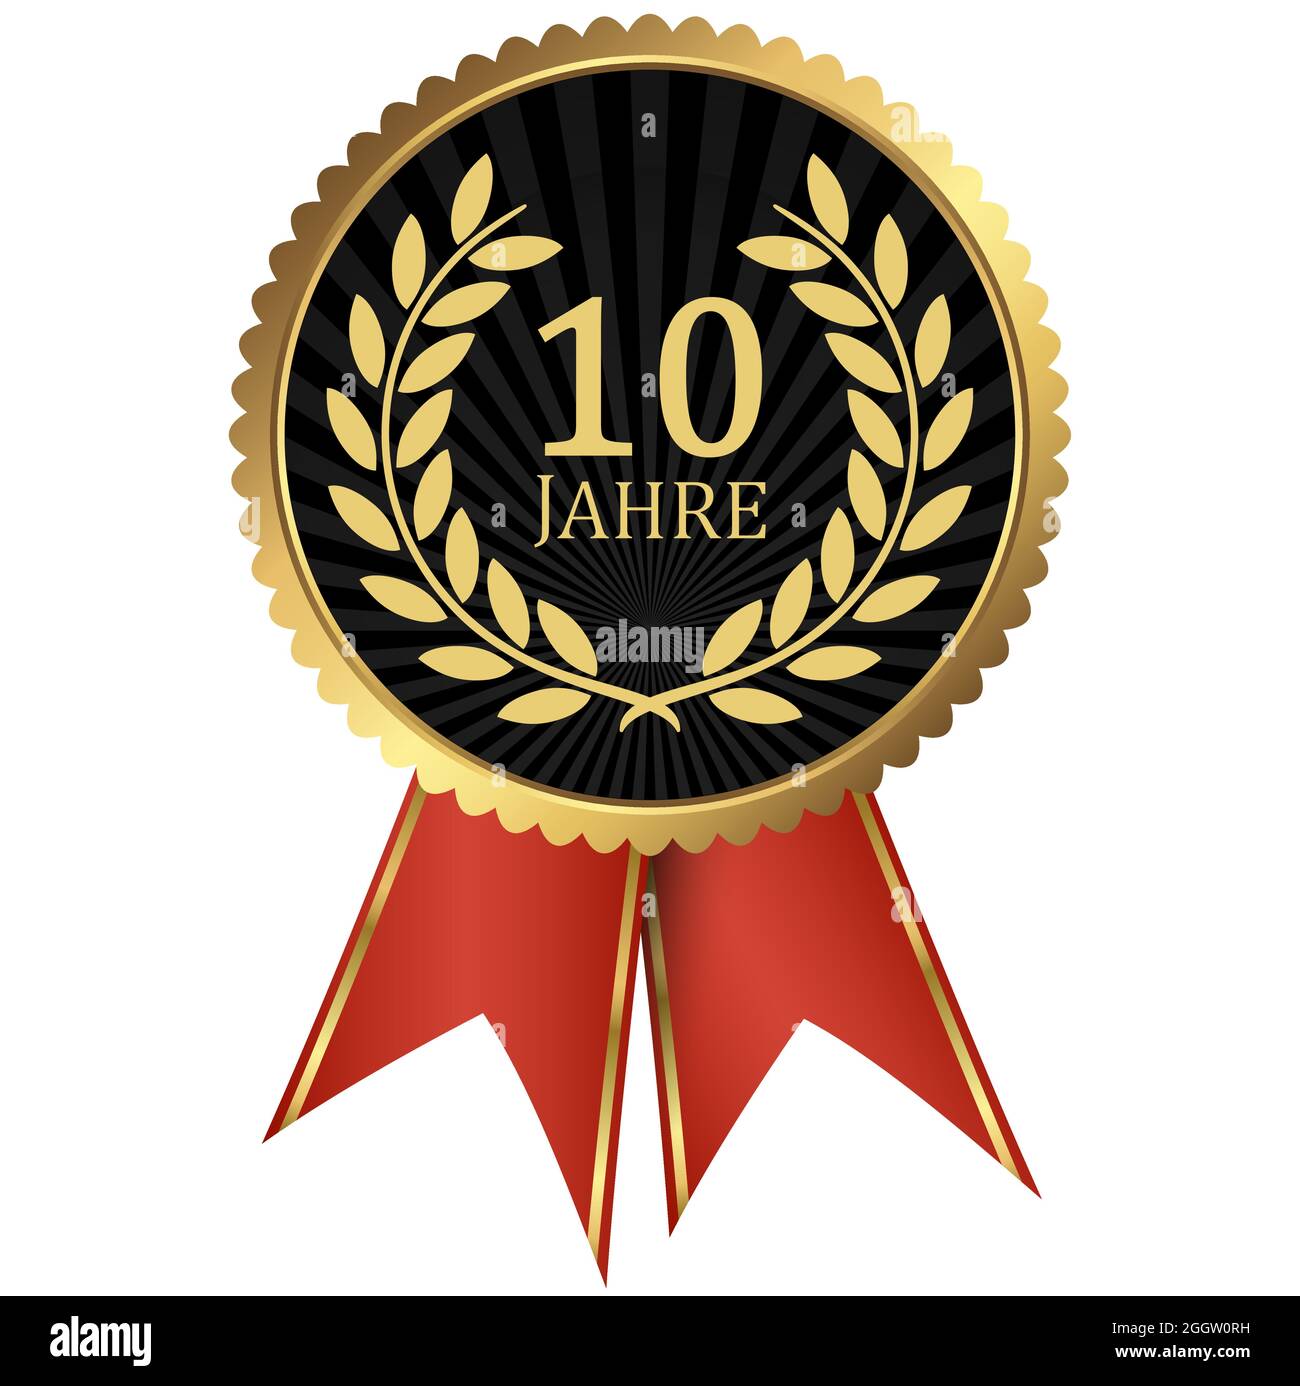 fichier vectoriel eps avec médaillon d'or avec couronne de laurier pour le succès ou jubilé ferme et texte 10 ans (texte allemand) Illustration de Vecteur